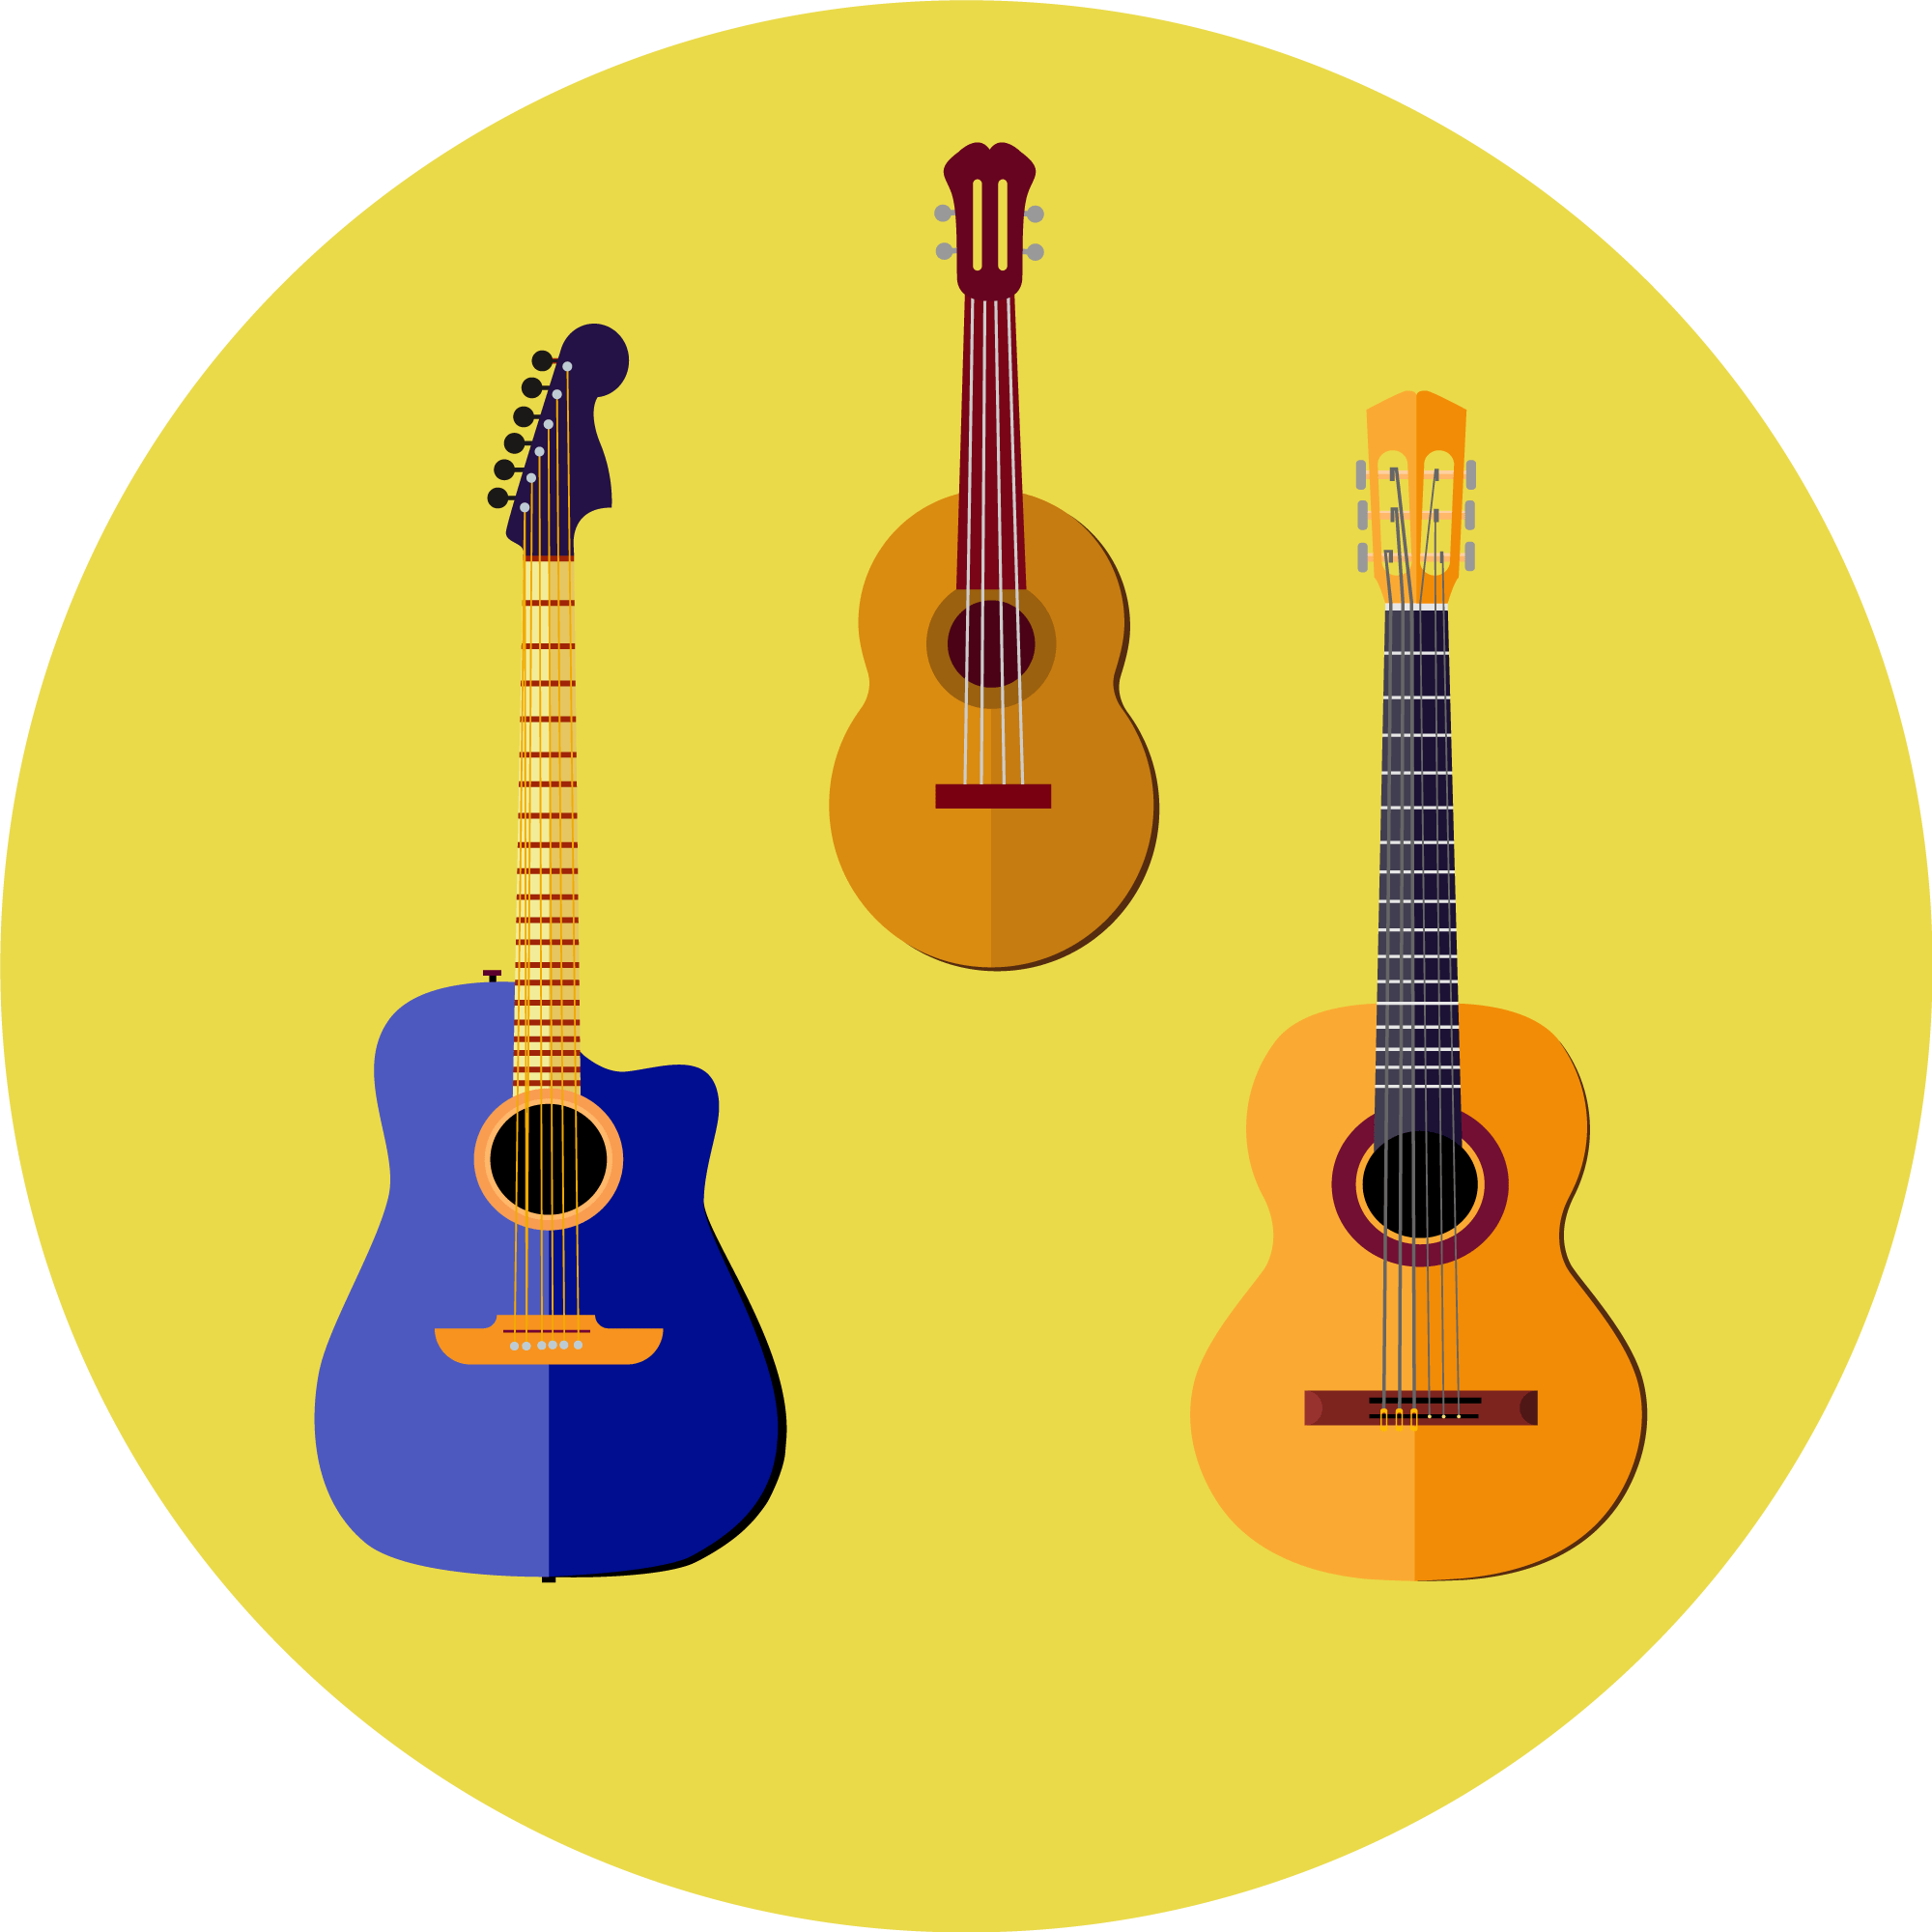 2 guitars and 1 ukulele illustration